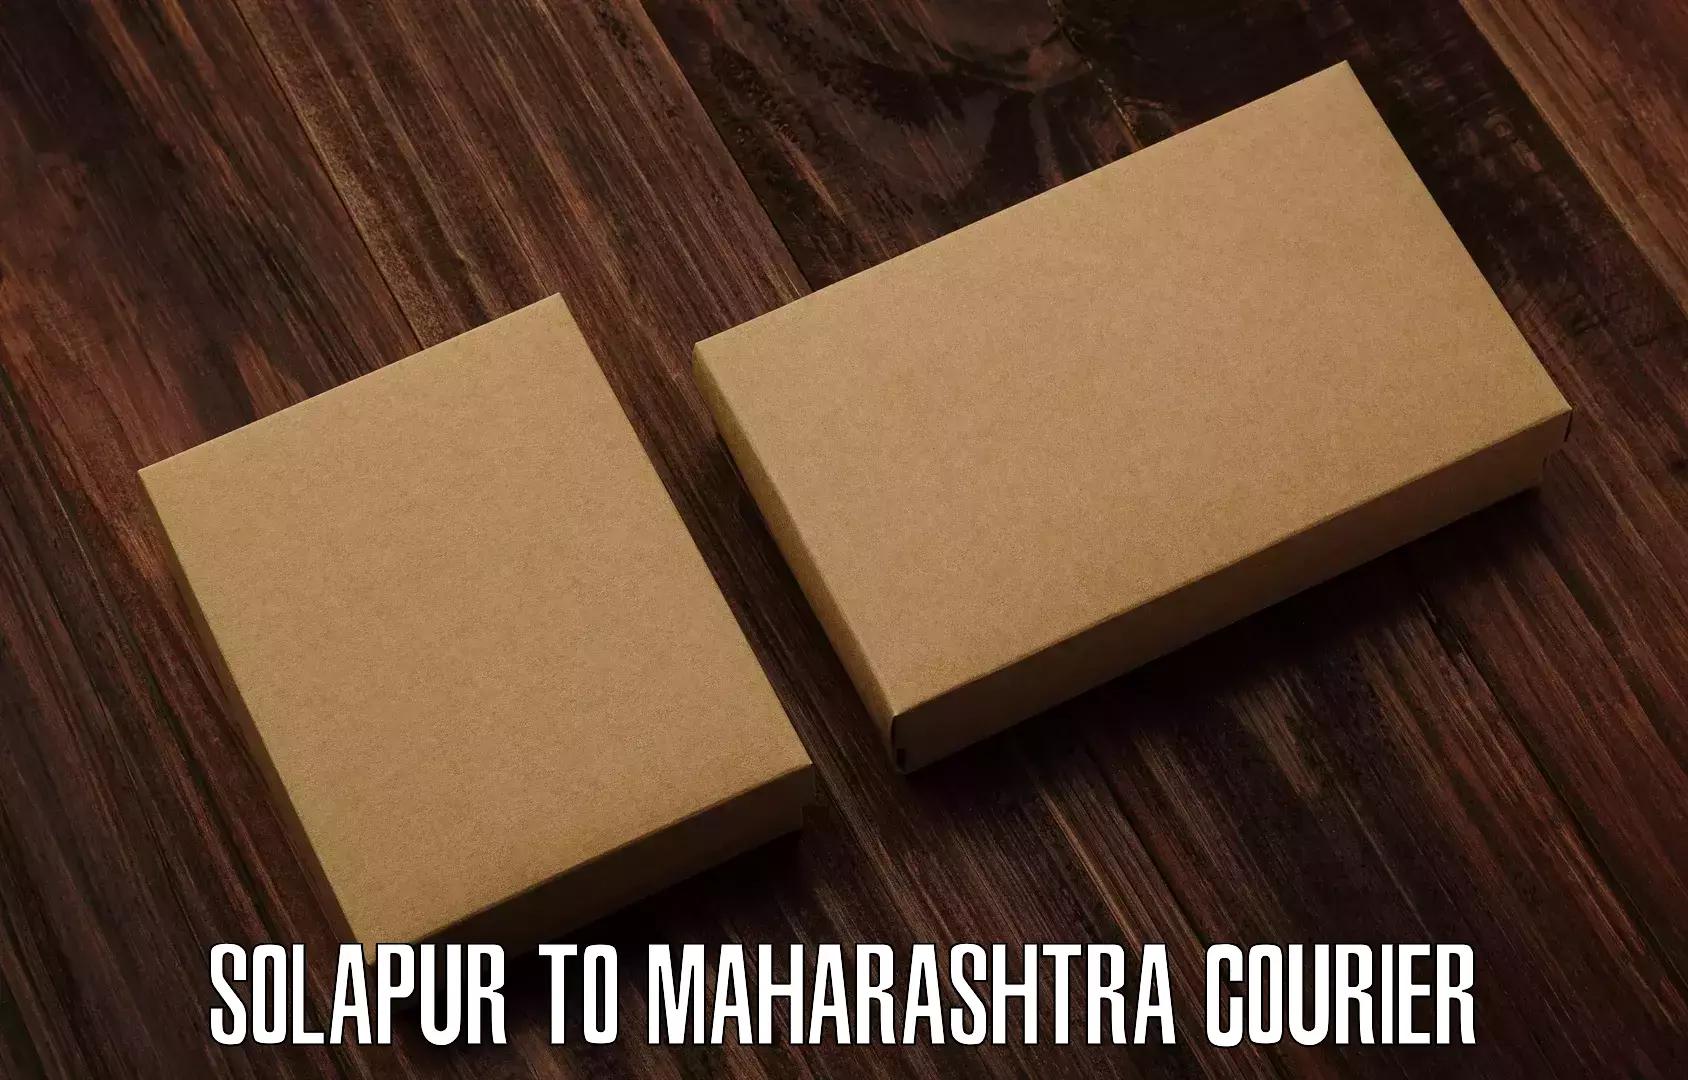 High-capacity parcel service Solapur to Maharashtra